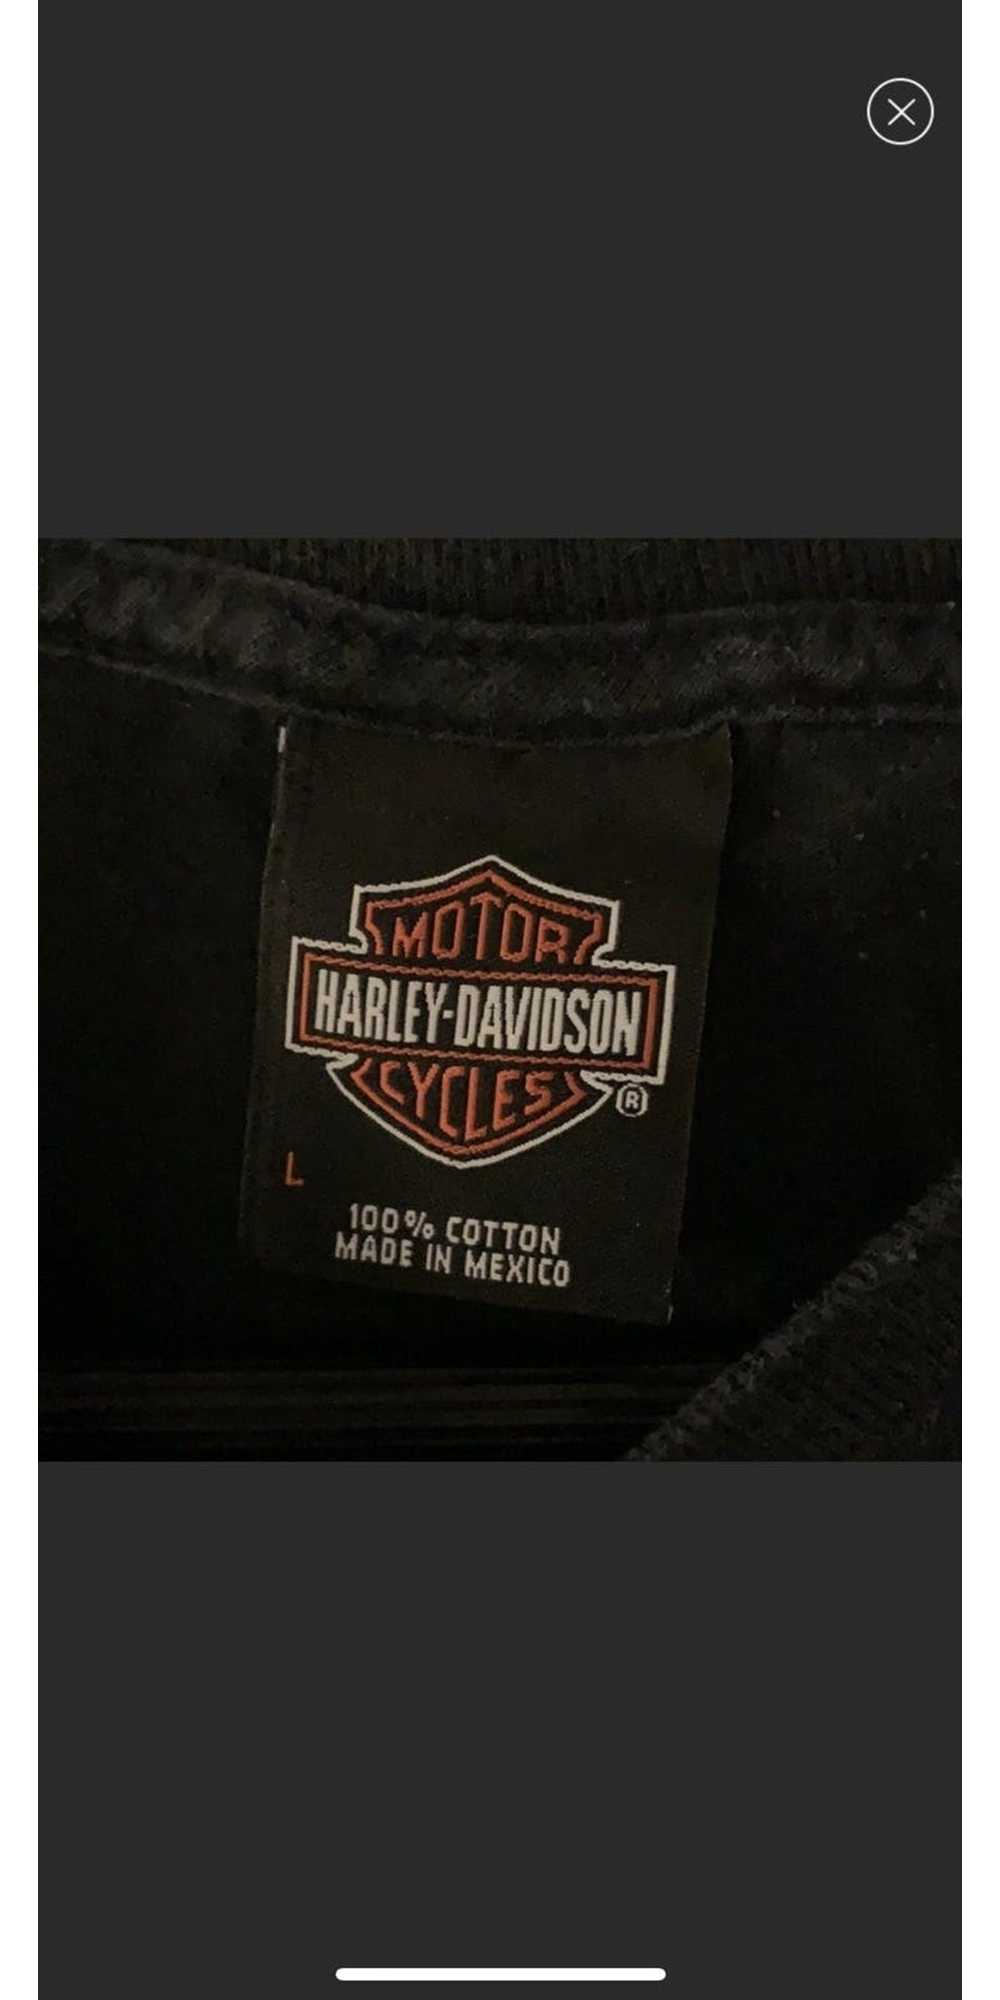 Harley Davidson Harley Davidson Vintage Tee - image 4